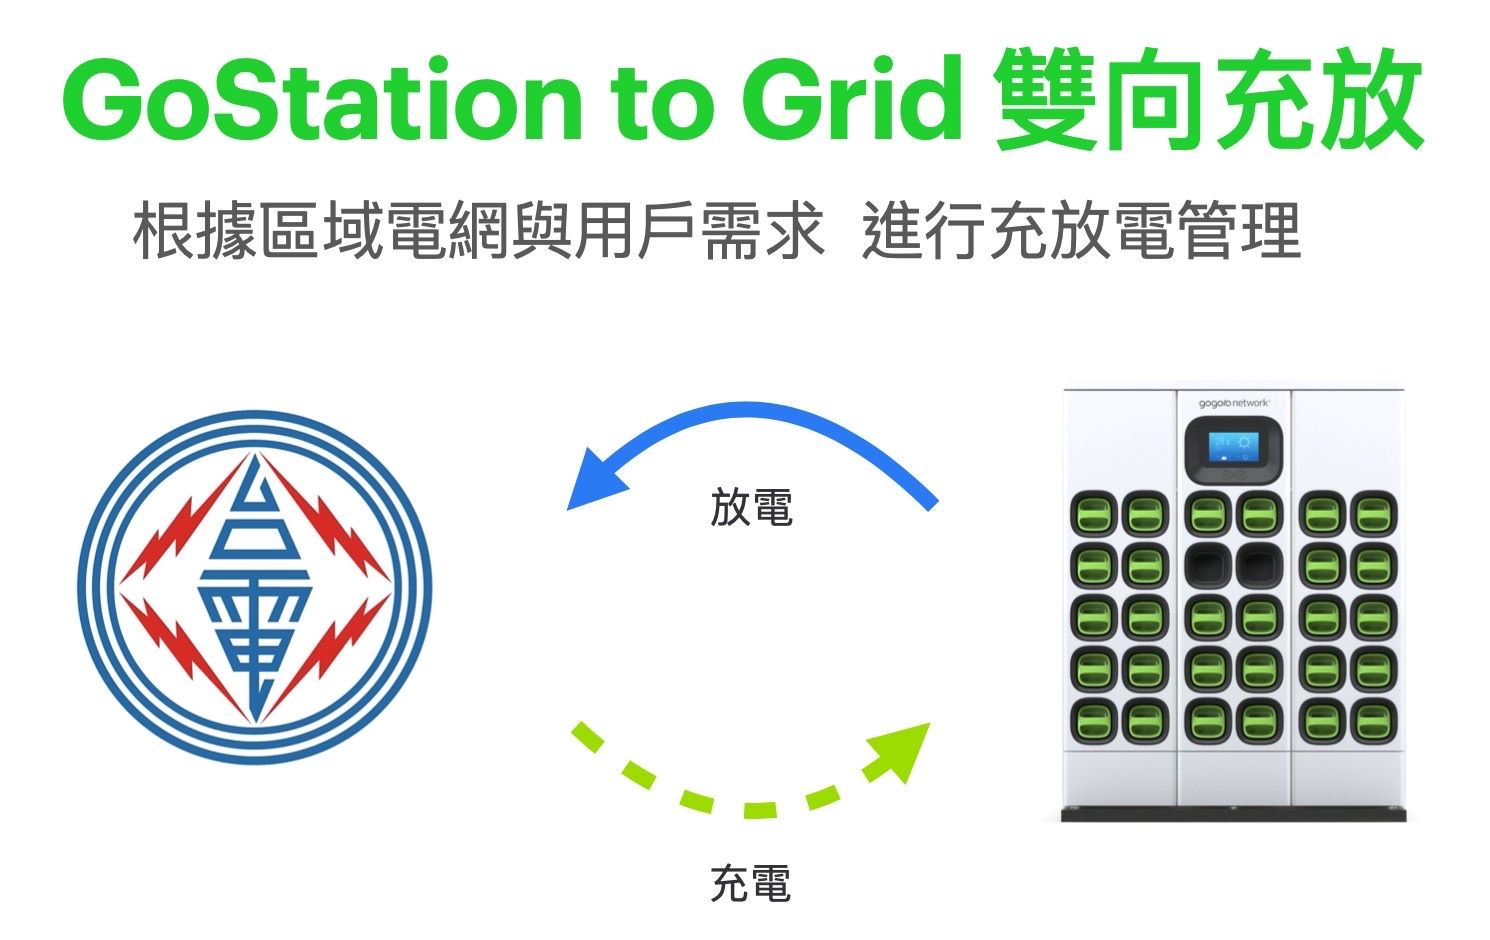 台灣電力公司、Enel X 義電智慧能源、Gogoro® 三方齊力 實現電網供需平衡　打造智慧城市生活圈